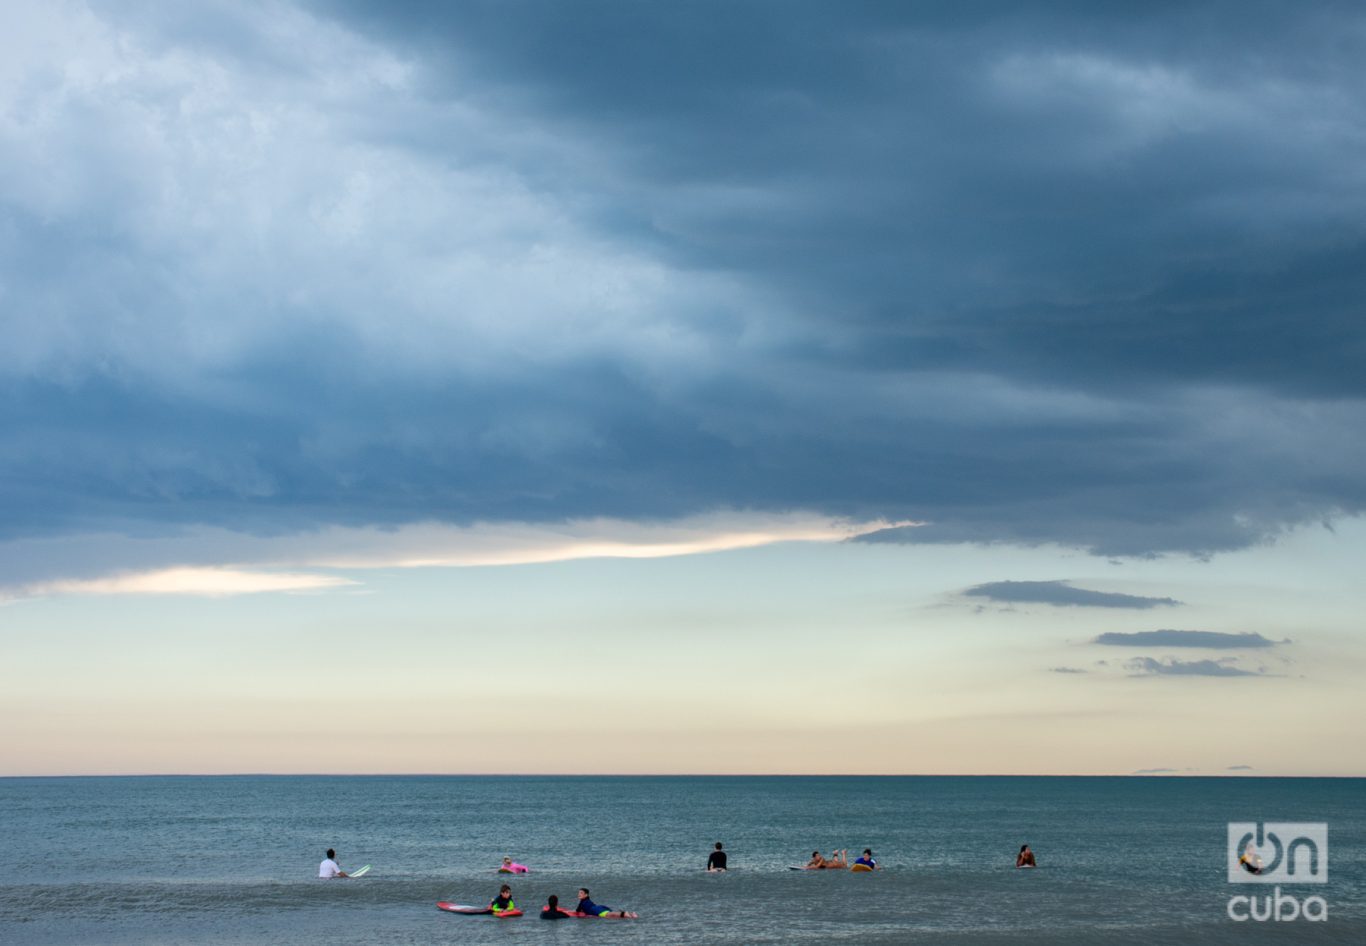 Surfistas a la espera de las olas en una playa de Mar del Plata. Foto: Kaloian.